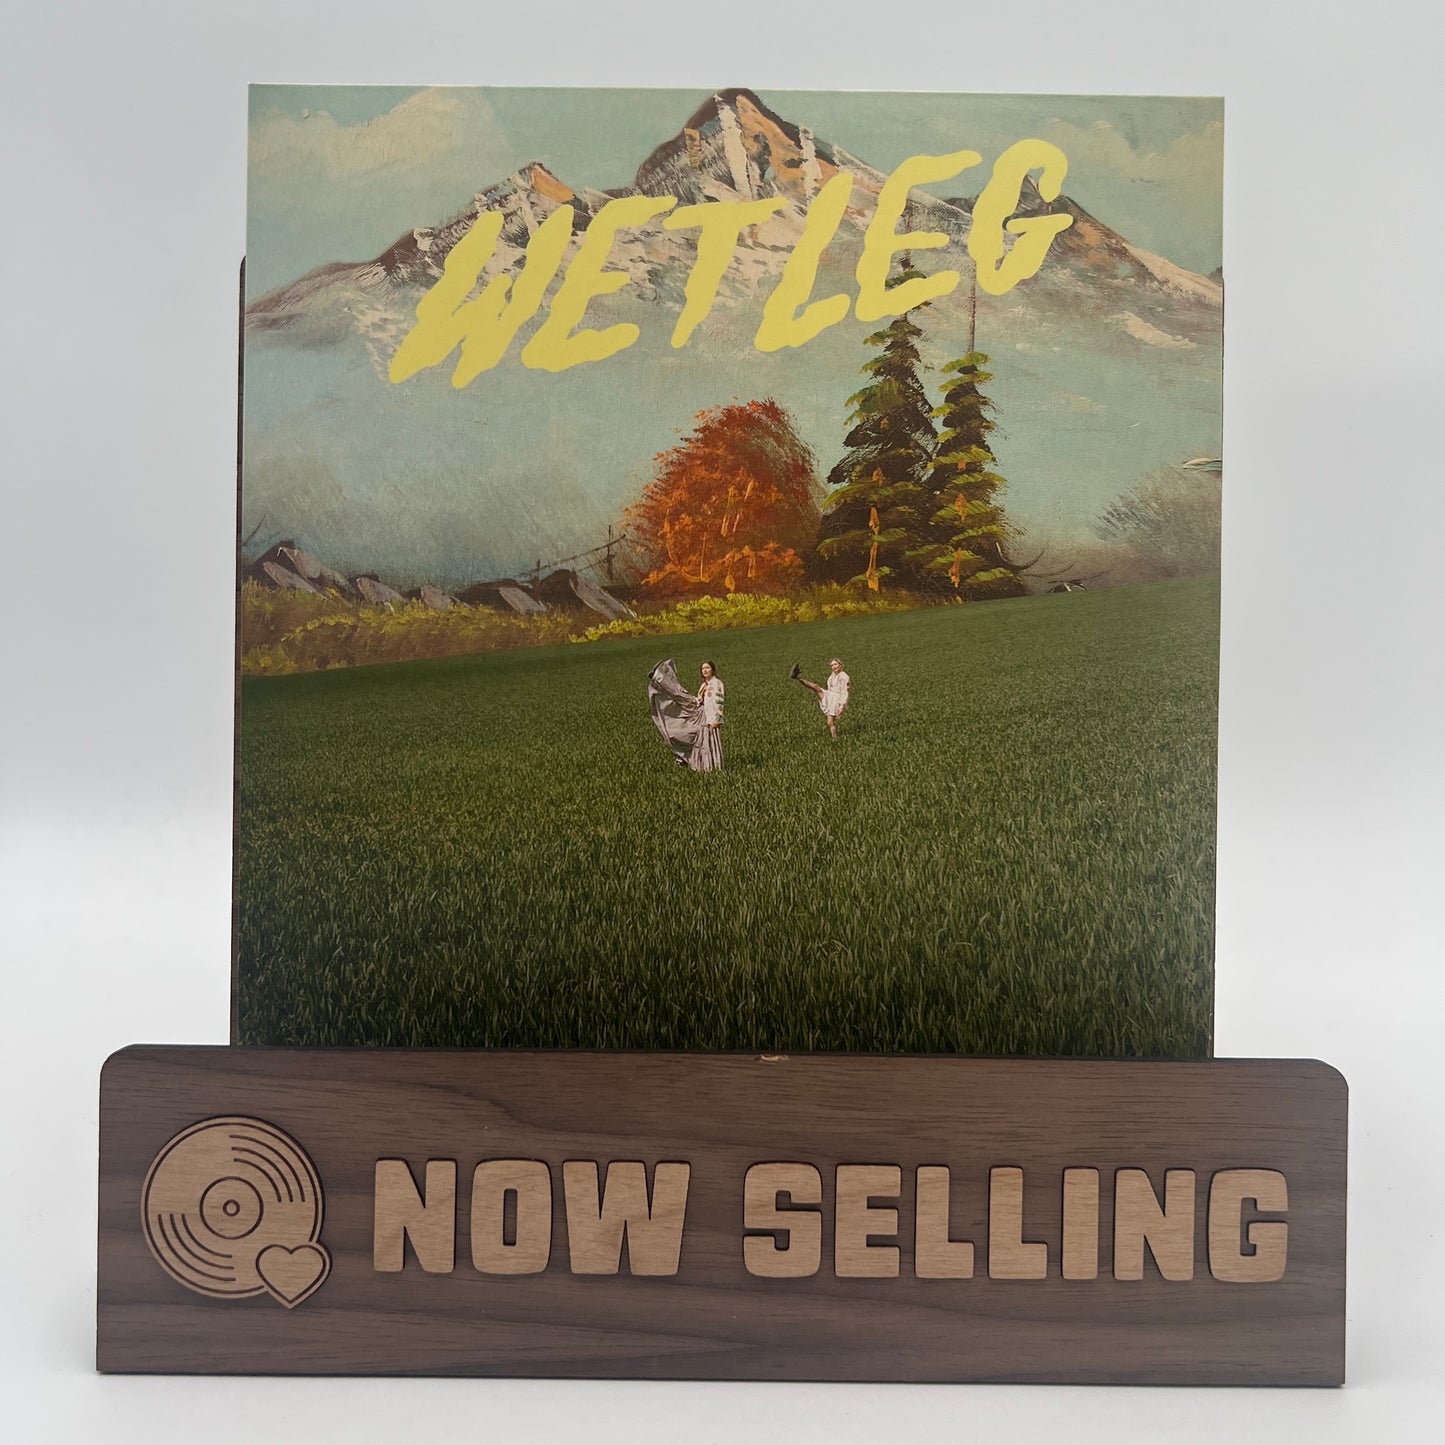 Wet Leg - Chaise Longue Vinyl 7" Original 1st Press